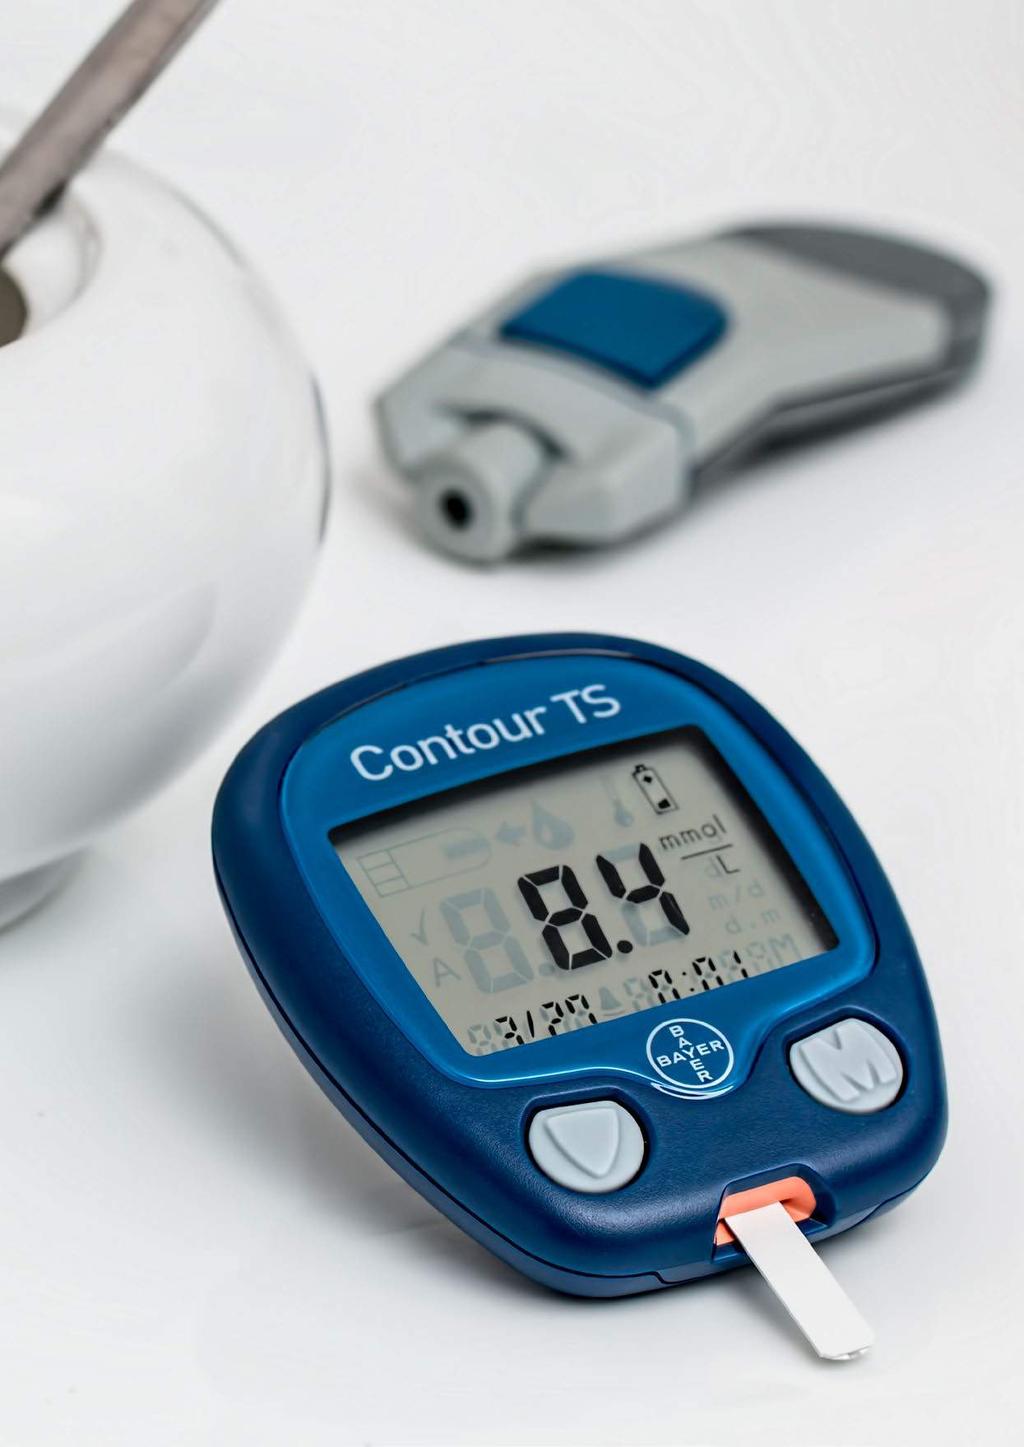 EASD. Långtidsblodsocker ratas vid diabetesscreening.